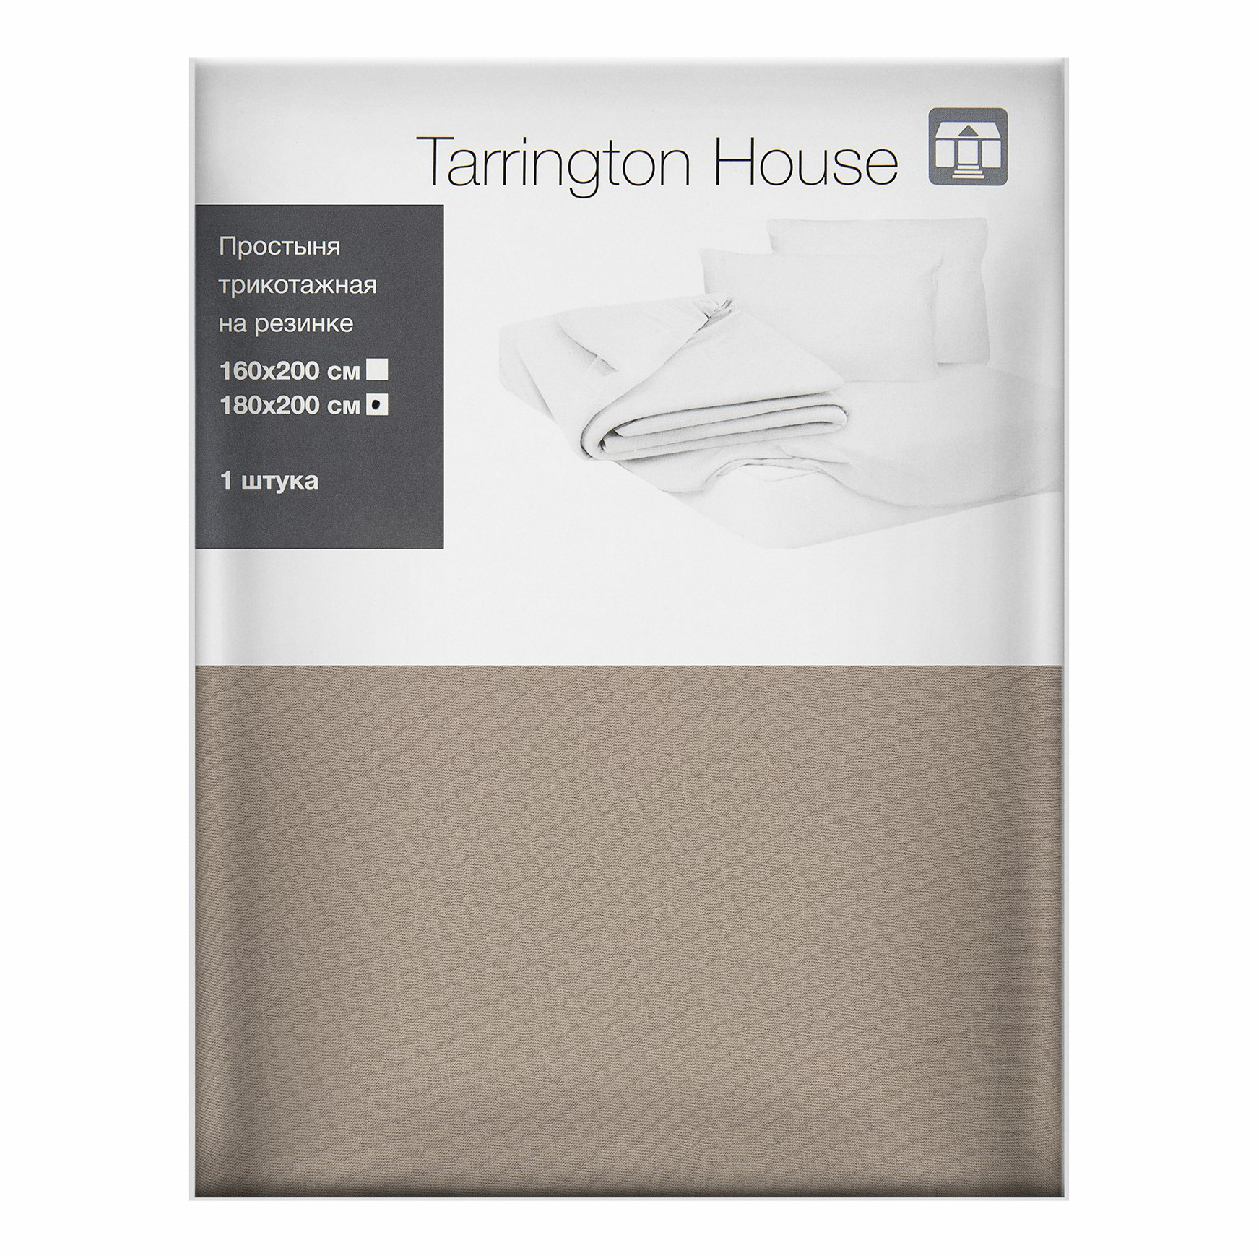 Простыня Tarrington House полутораспальная текстиль 180 x 200 см латте